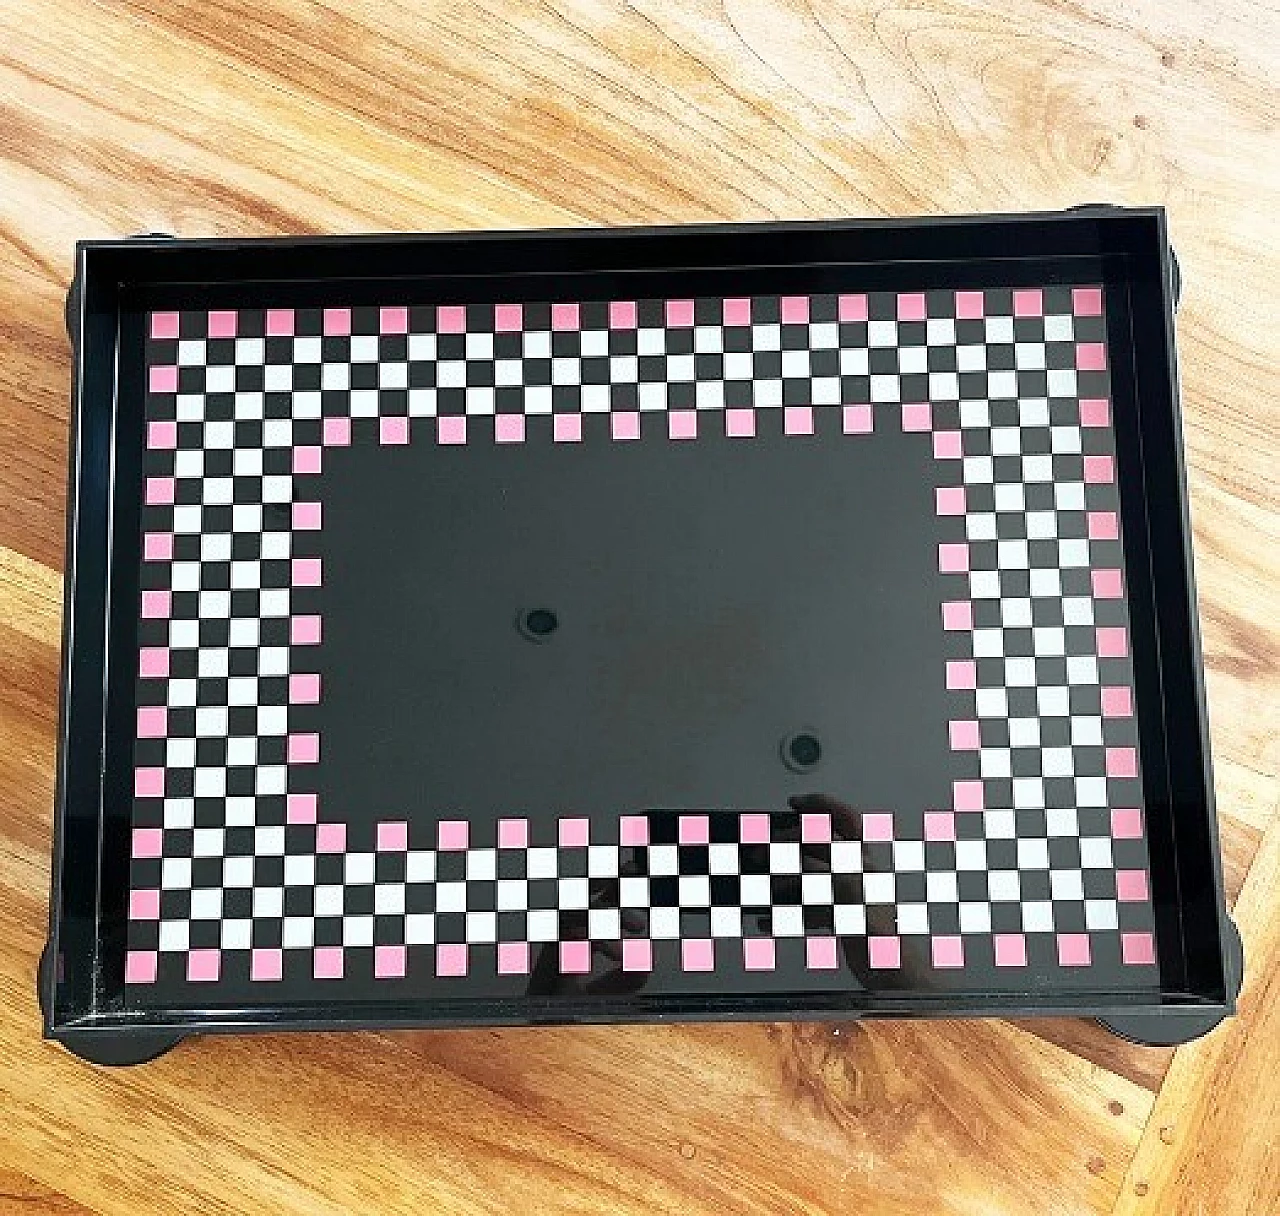 Memphis plastic checkered tray by Matteo Thun for WMF La Galleria, 1986 1